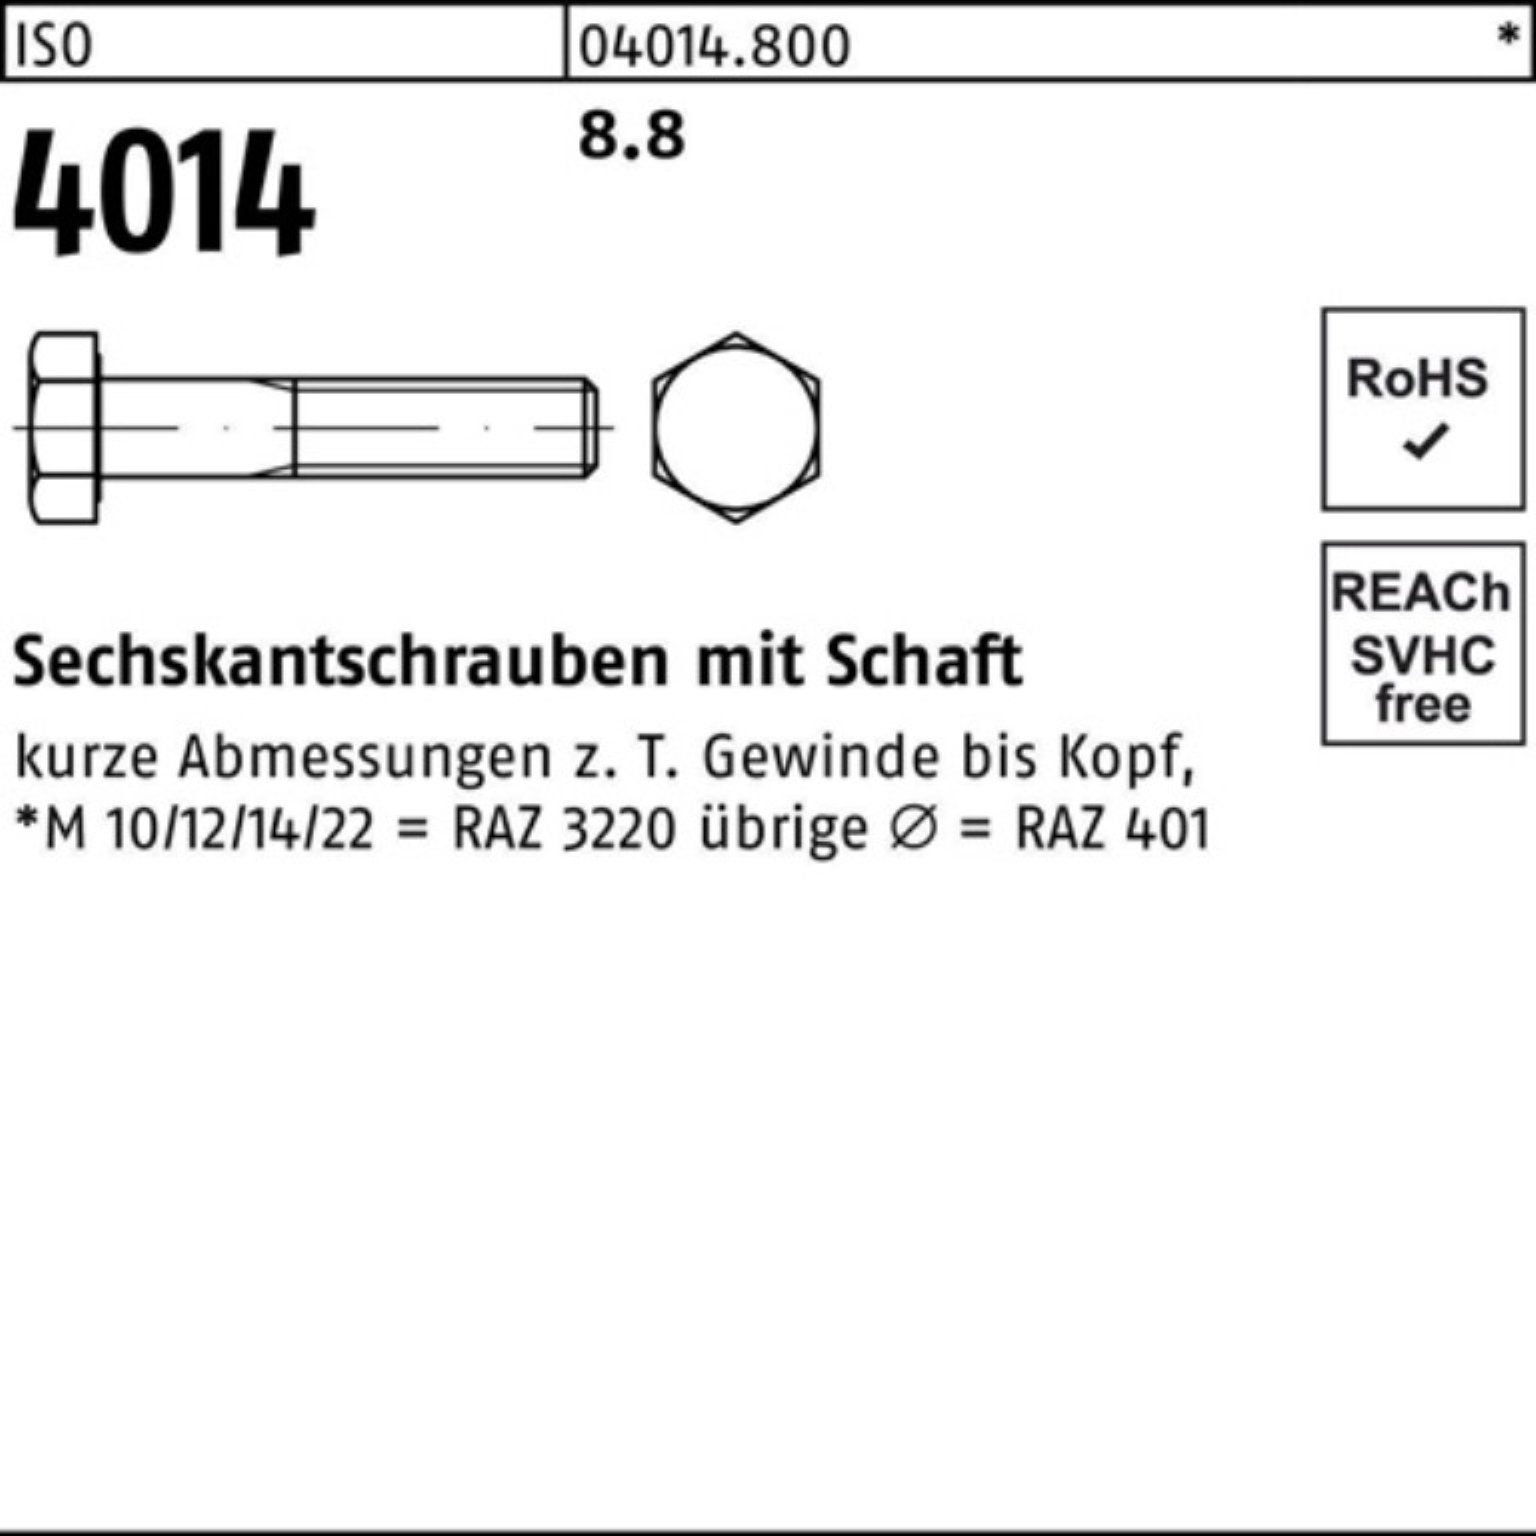 Bufab Sechskantschraube 100er Schaft 4014 100 100 Pack IS ISO 8.8 Stück Sechskantschraube M8x